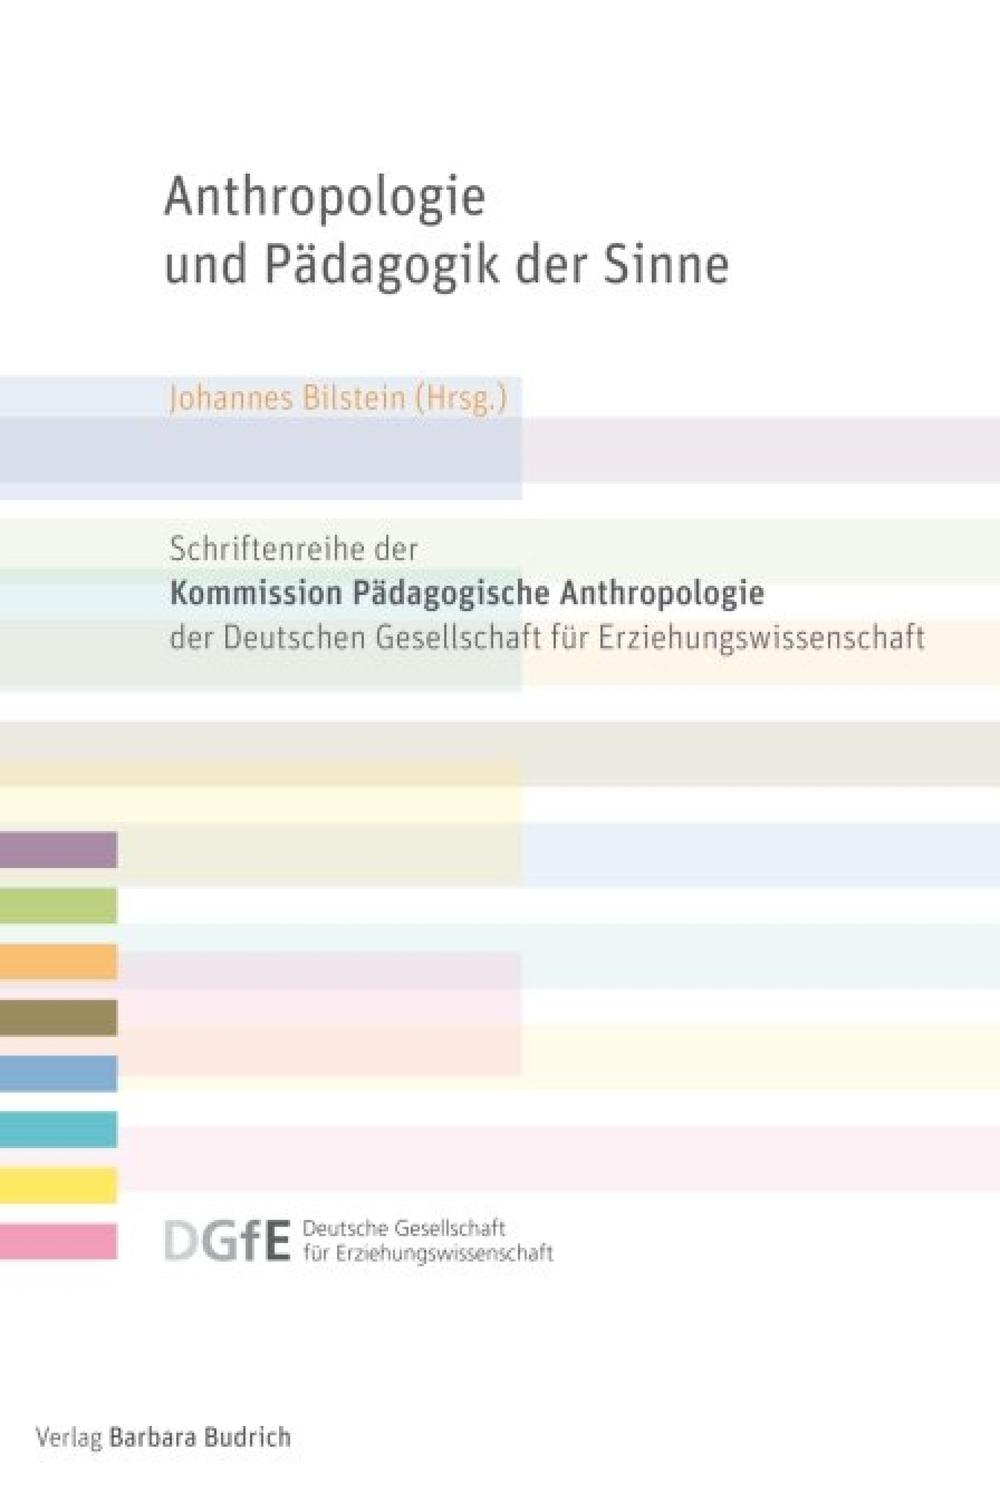 Anthropologie und Pädagogik der Sinne - Johannes Bilstein